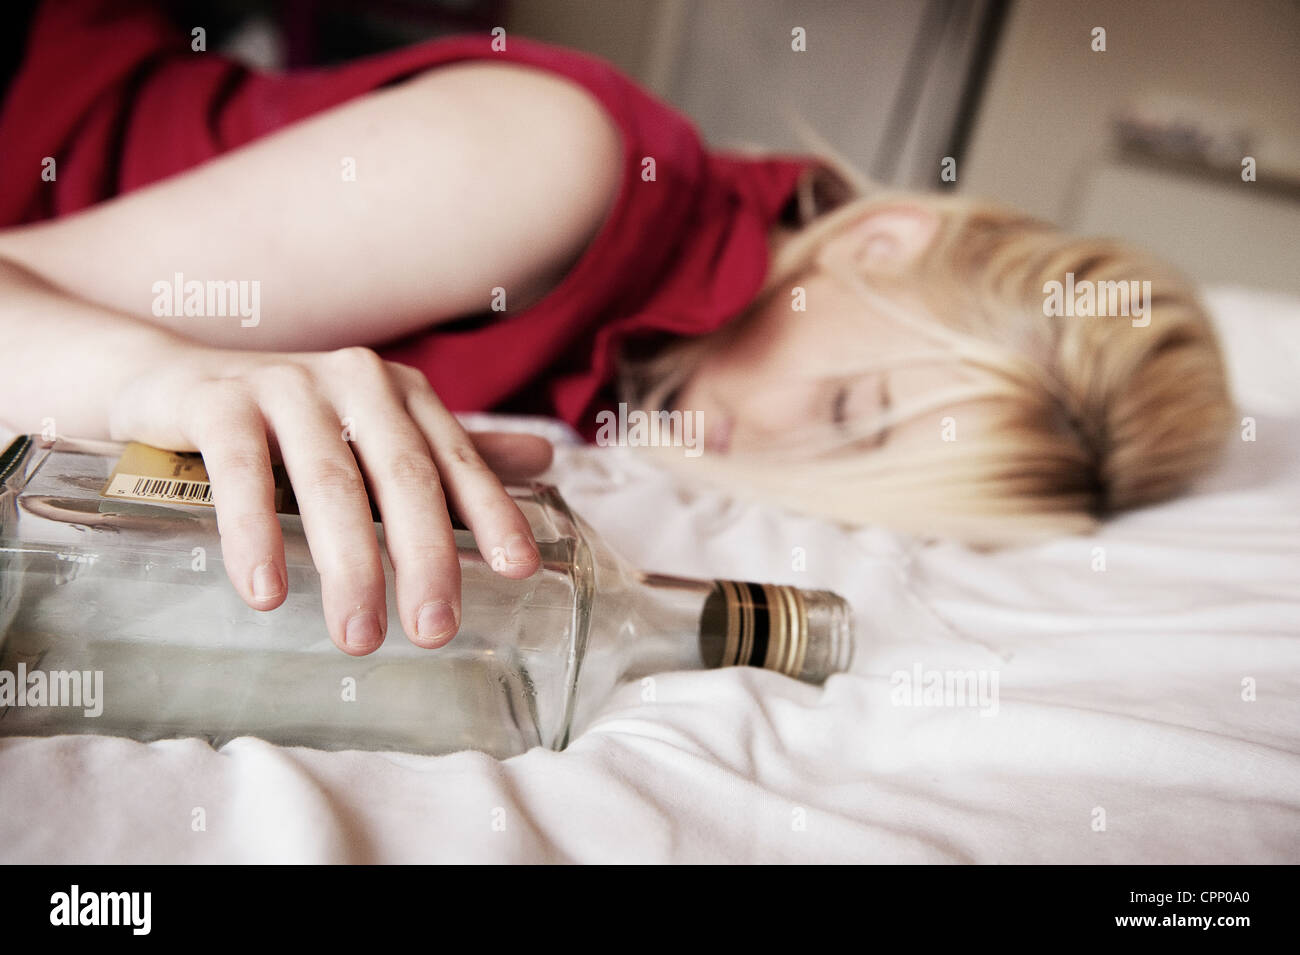 Drunken adolescente endormie sur un lit serrant une bouteille. Banque D'Images